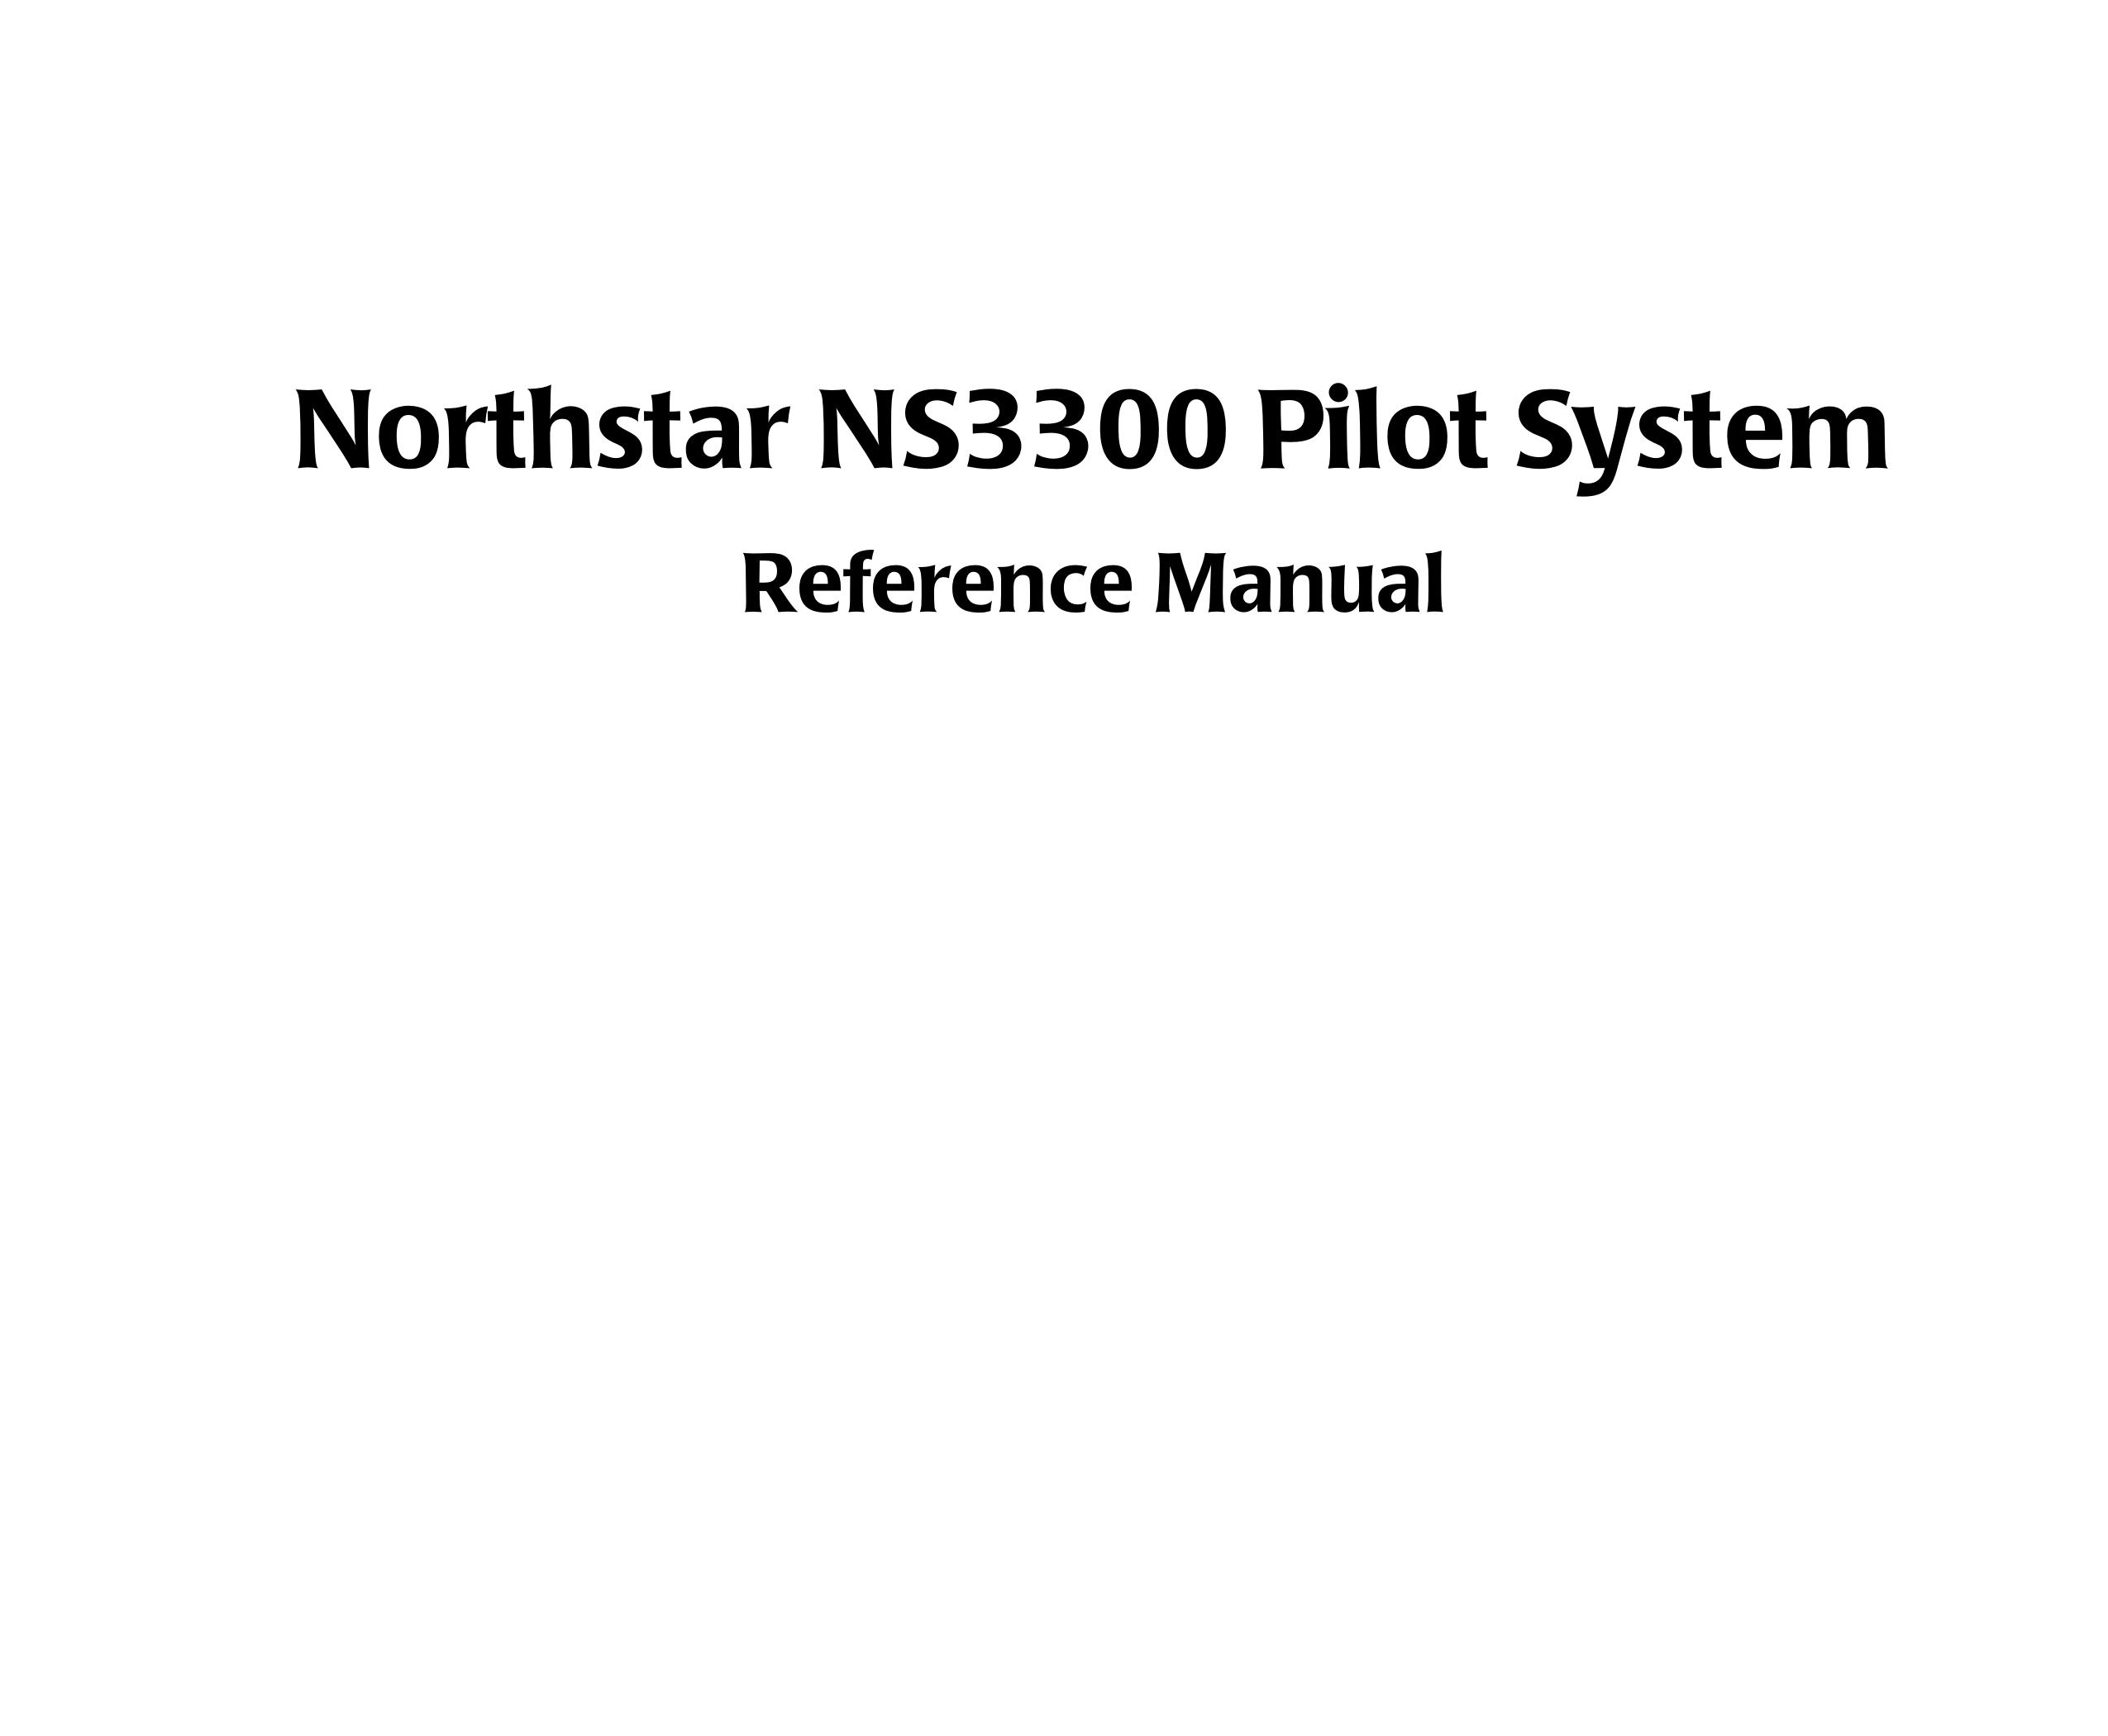 NorthStar Navigation NS3300 Fish Finder User Manual